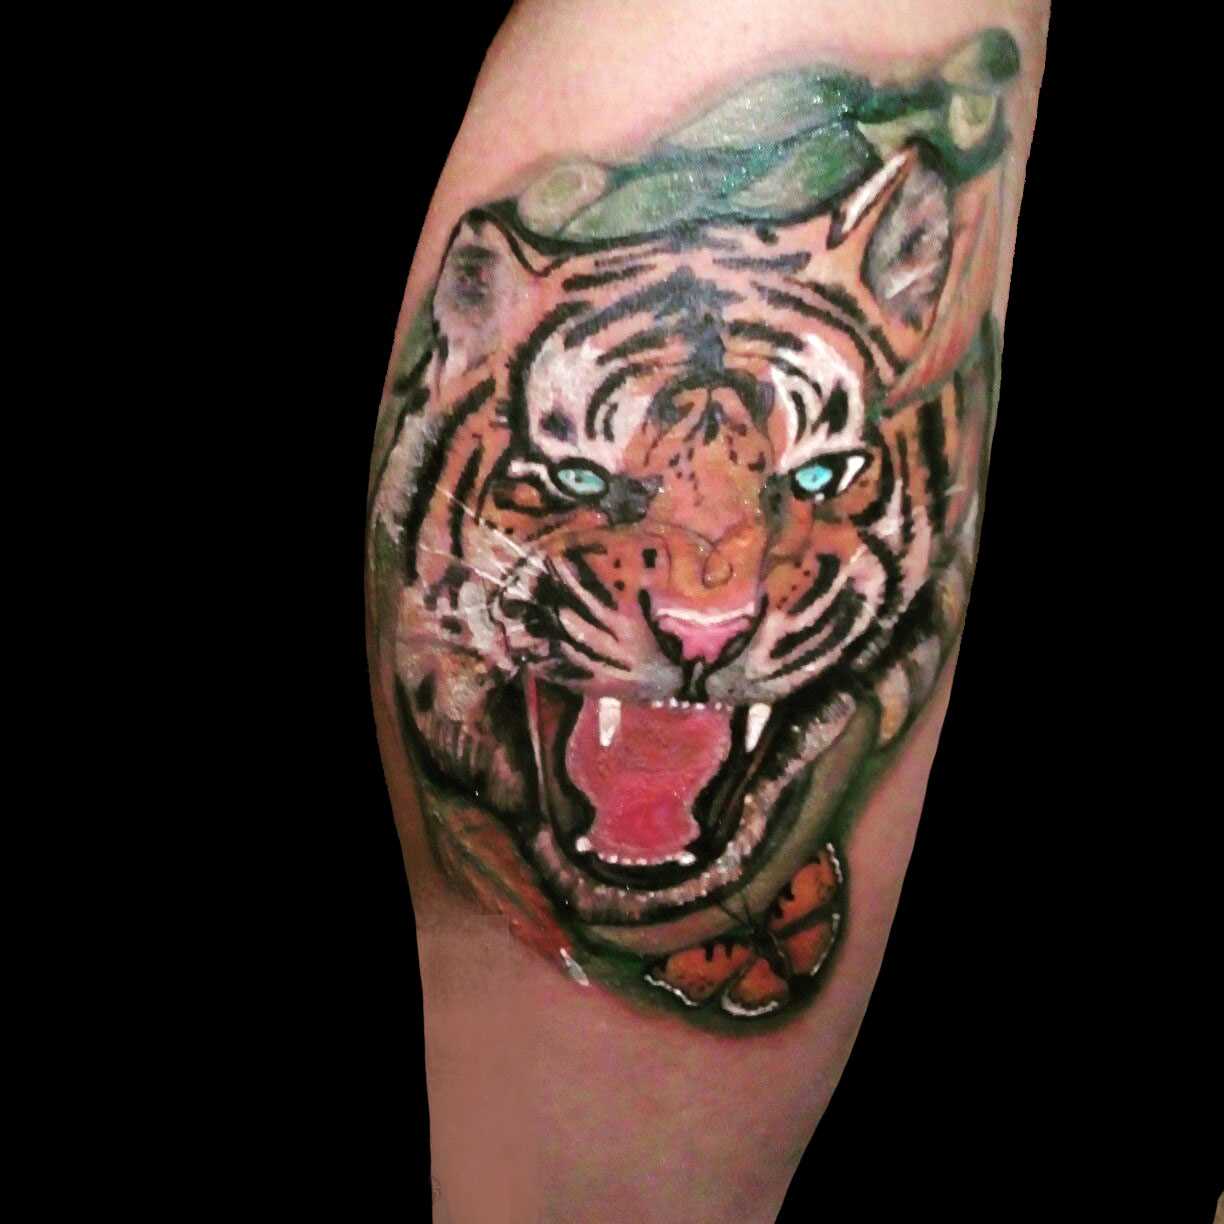 A tatuagem de tigre sobre a perna de um cara